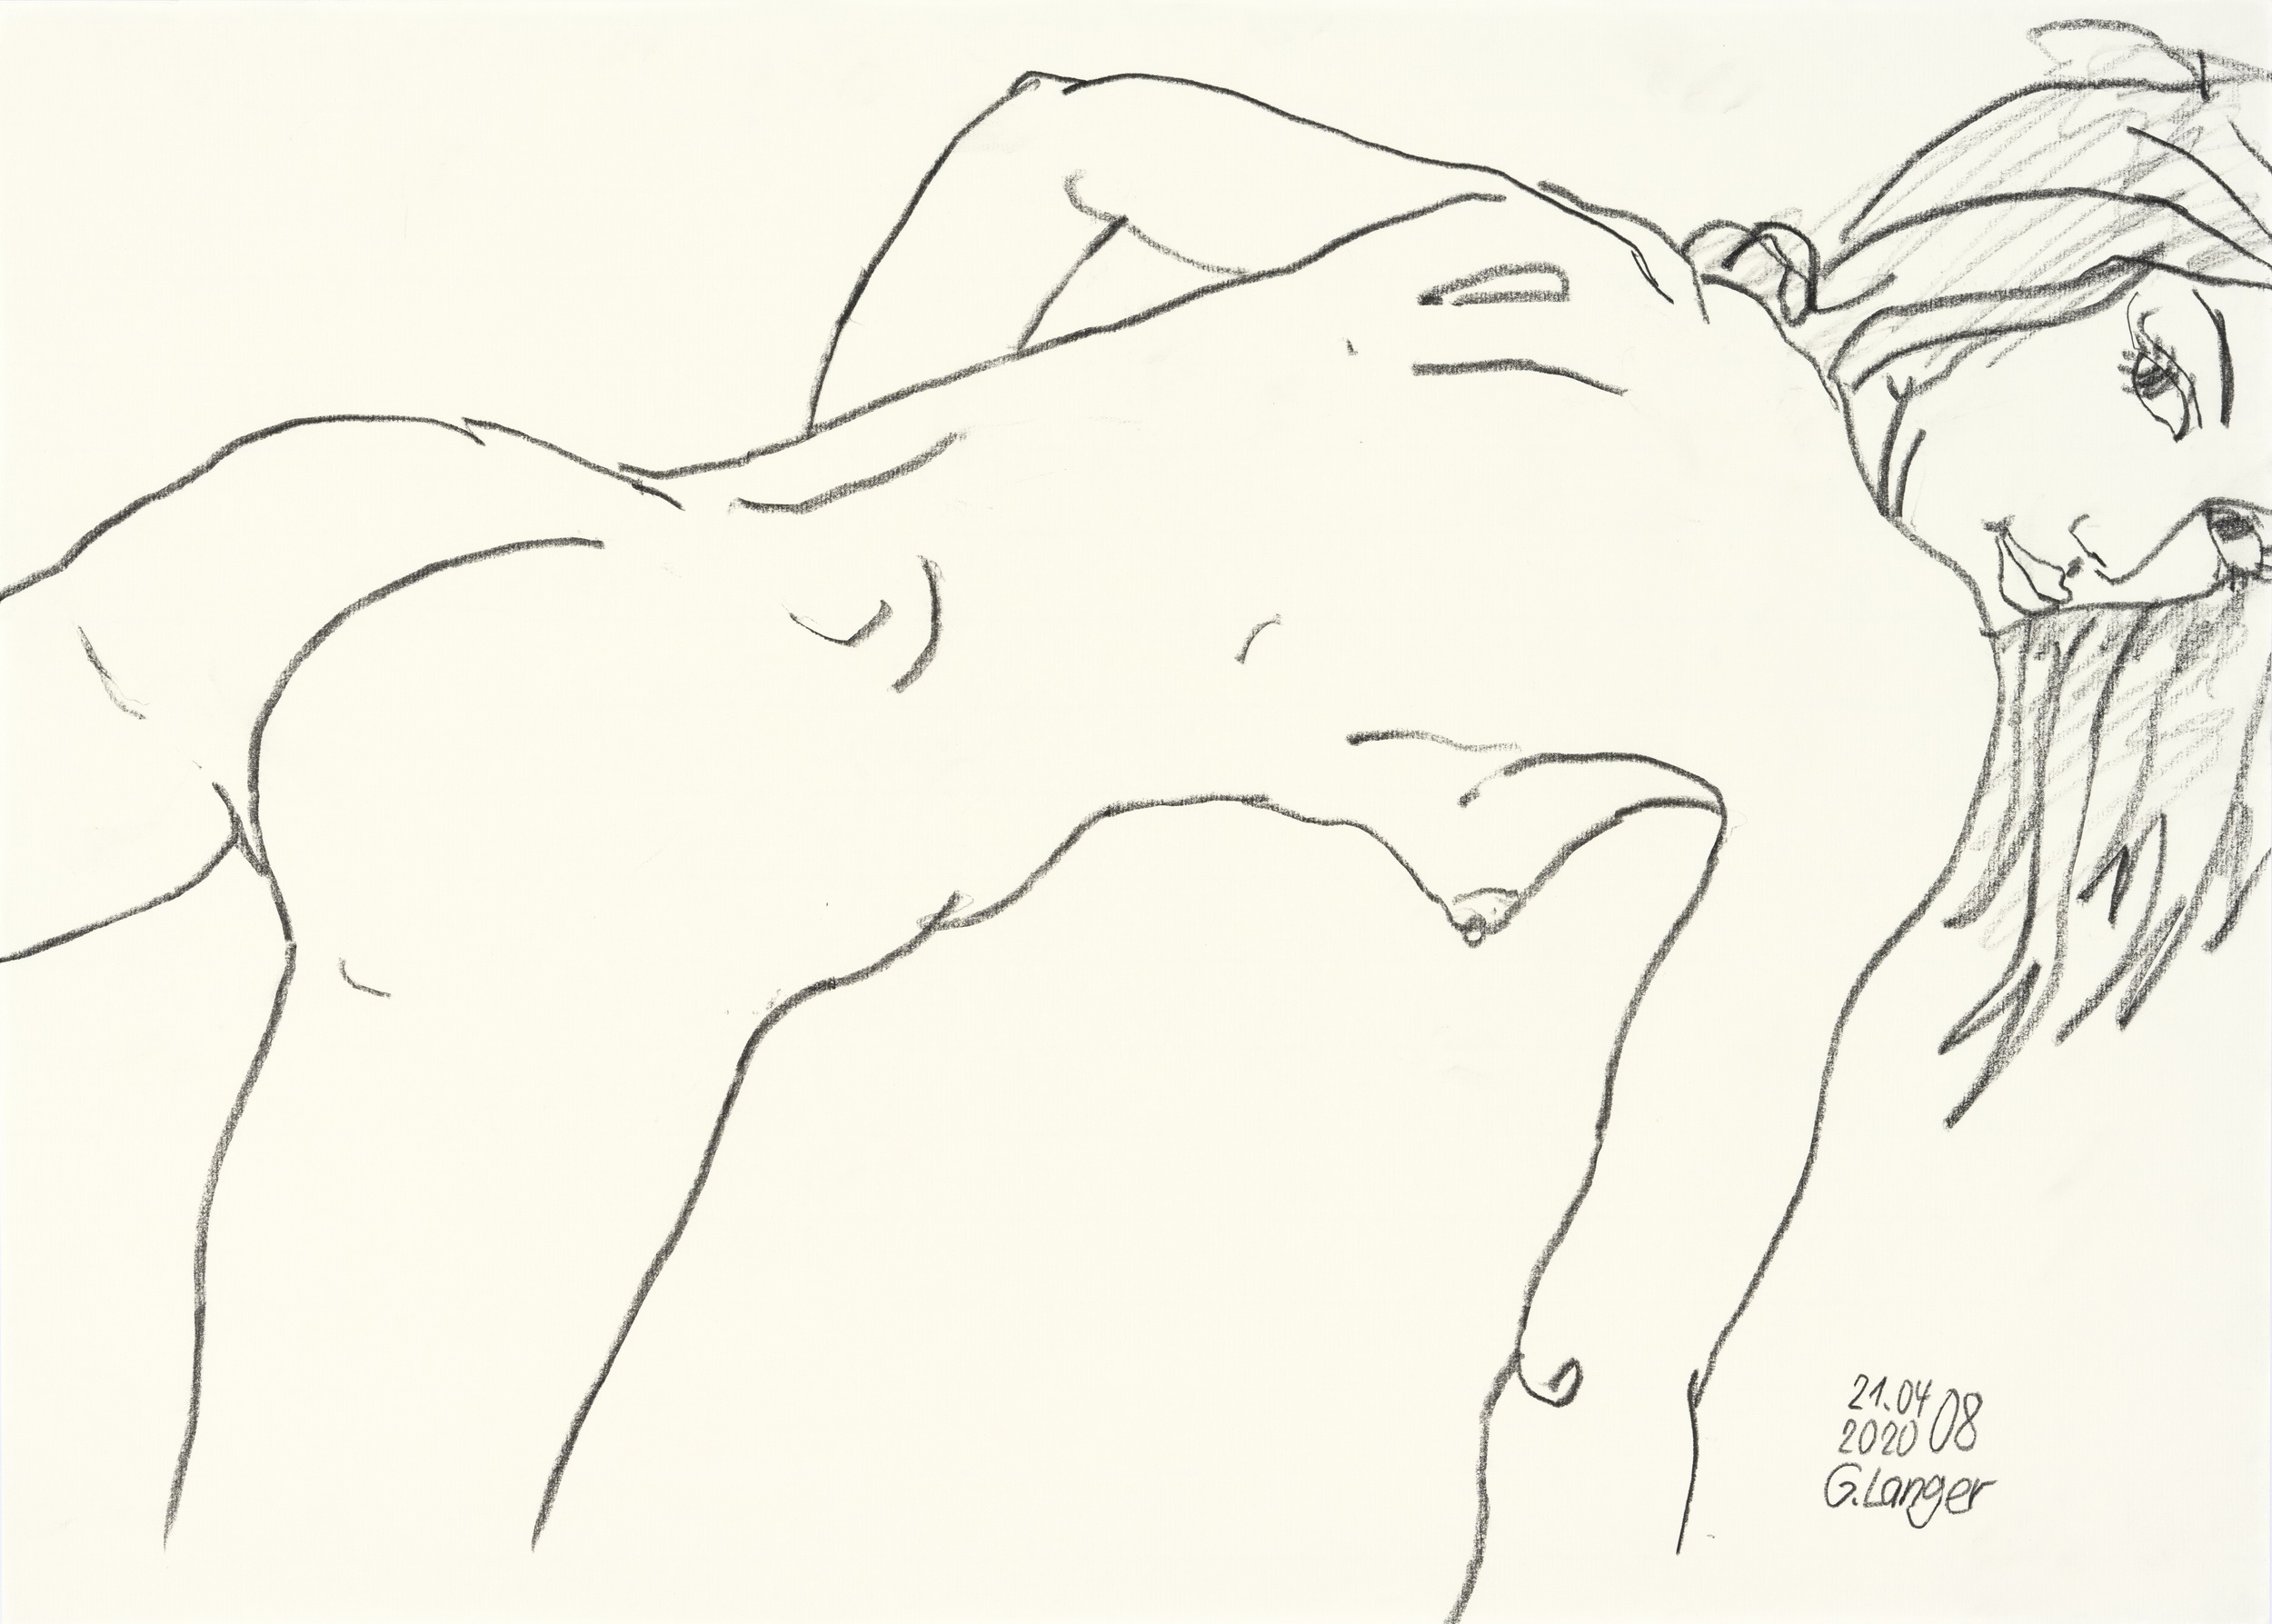 Gunter Langer, Liegendes nacktes Mädchen übergebeugt, aufgestützt, 2020, Zeichnung, Zeichenpapier, 50 x 70 cm